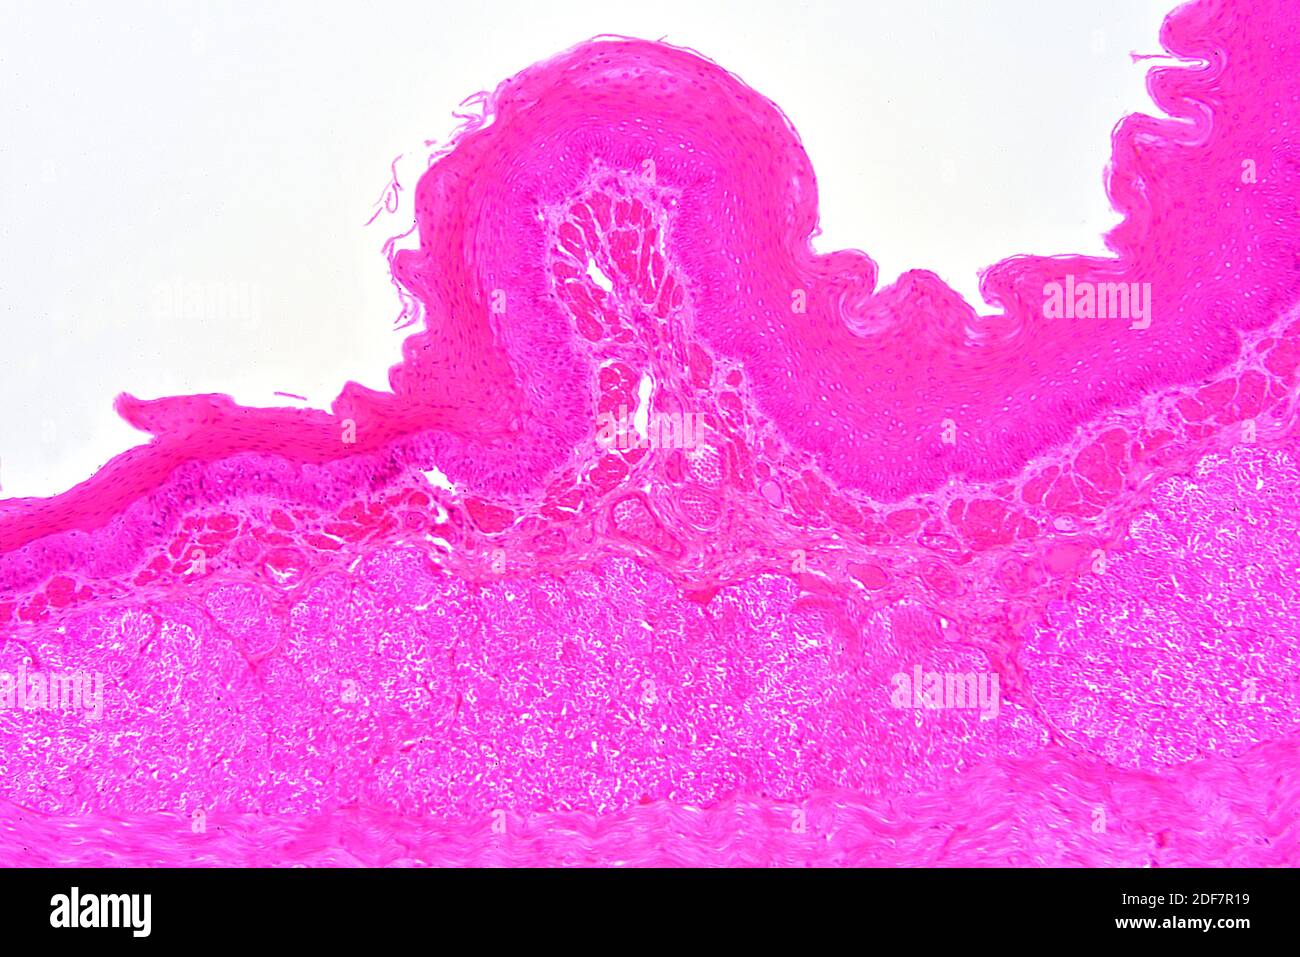 Esofago umano che mostra epitelio squamoso stratificato non cheratinizzato. X75 a 10 cm di larghezza. Foto Stock